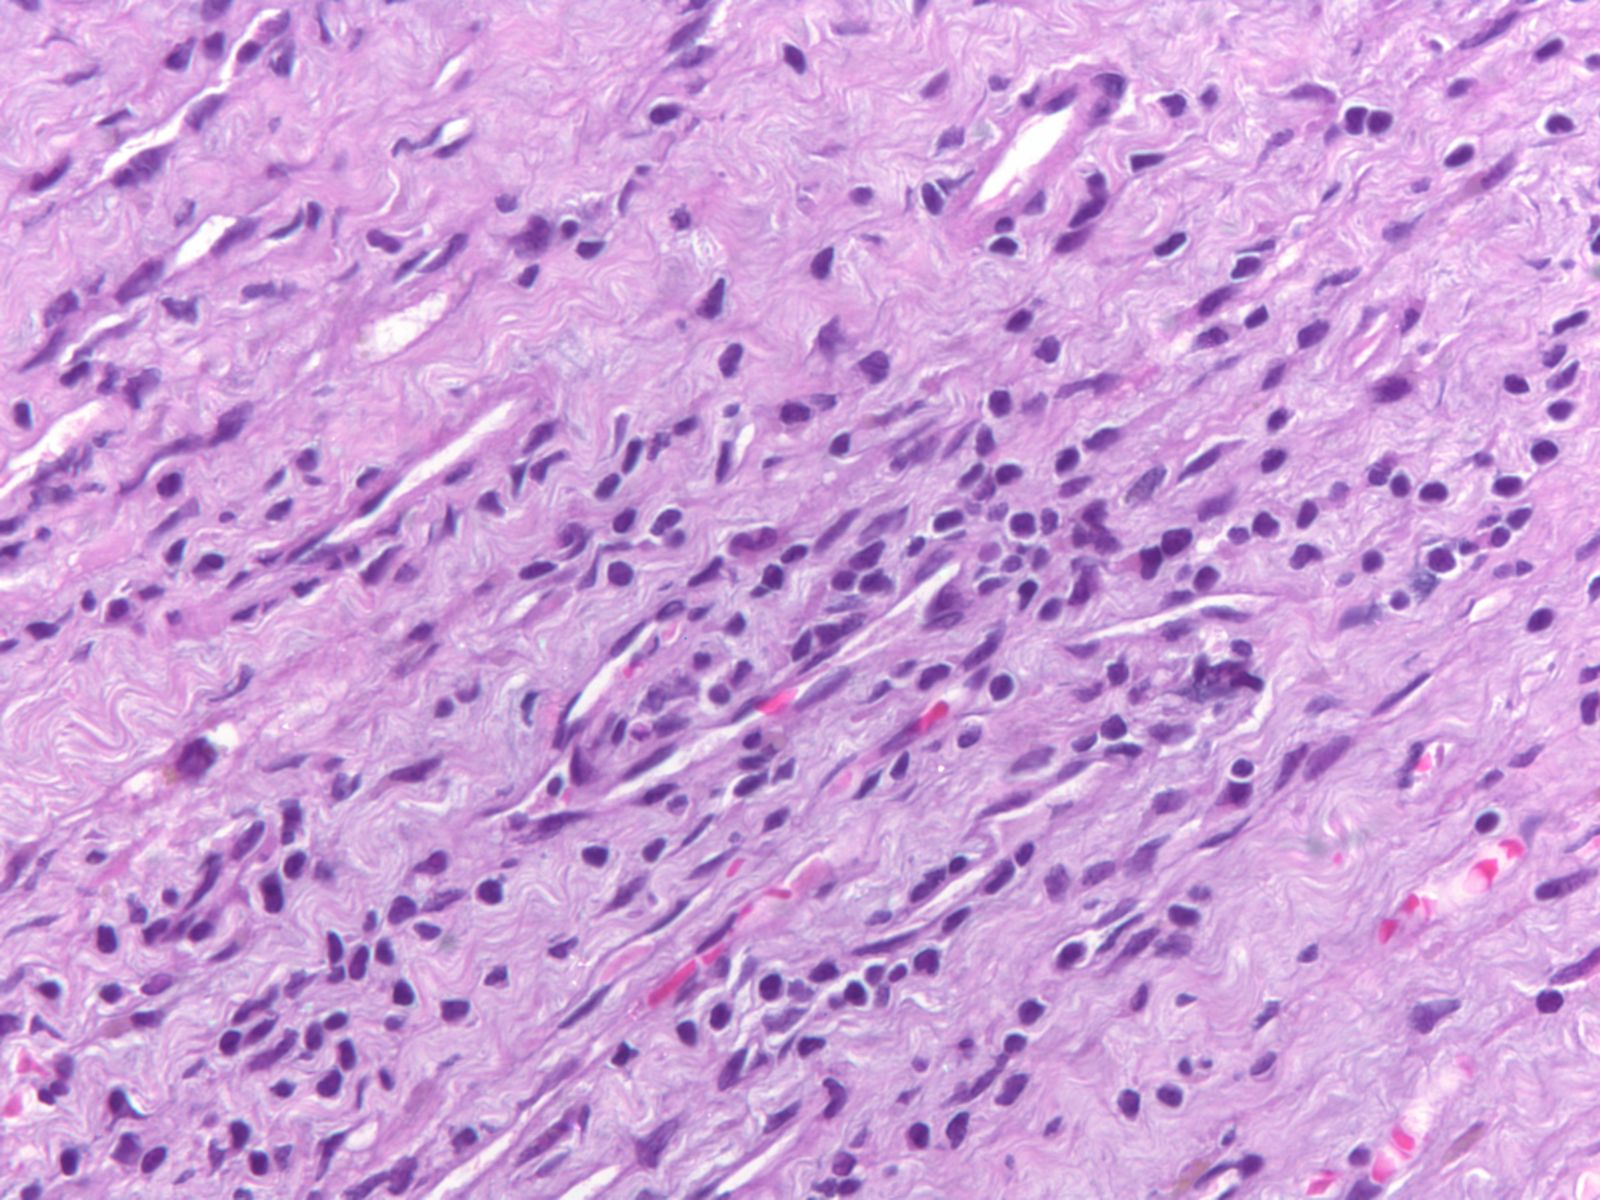 Βιοψία µυοκαρδίου ασθενούς Ασθενής KM (Cod 157-191) x10 x40